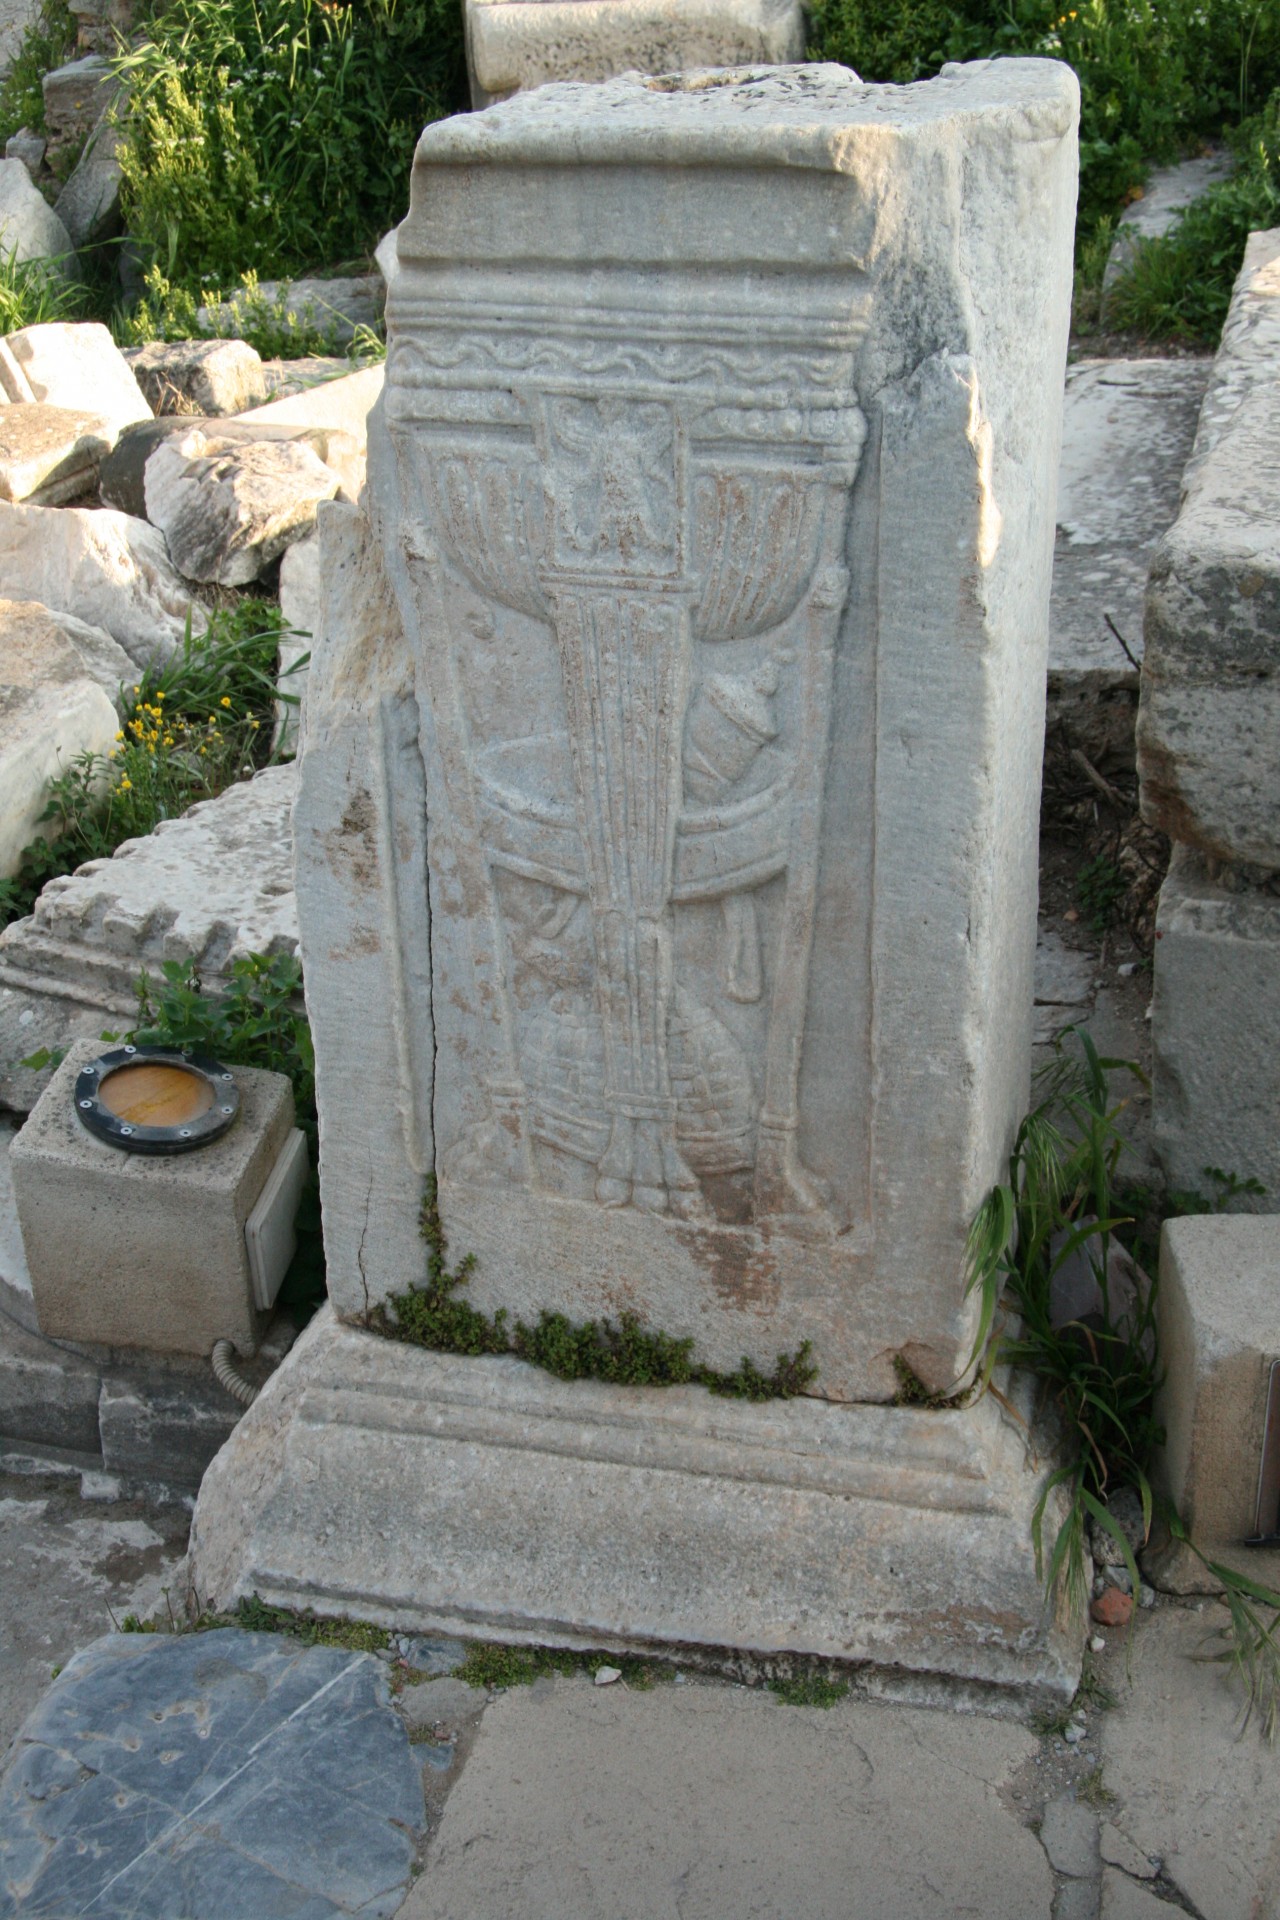 Turkey Ephesus Ruins Emblem